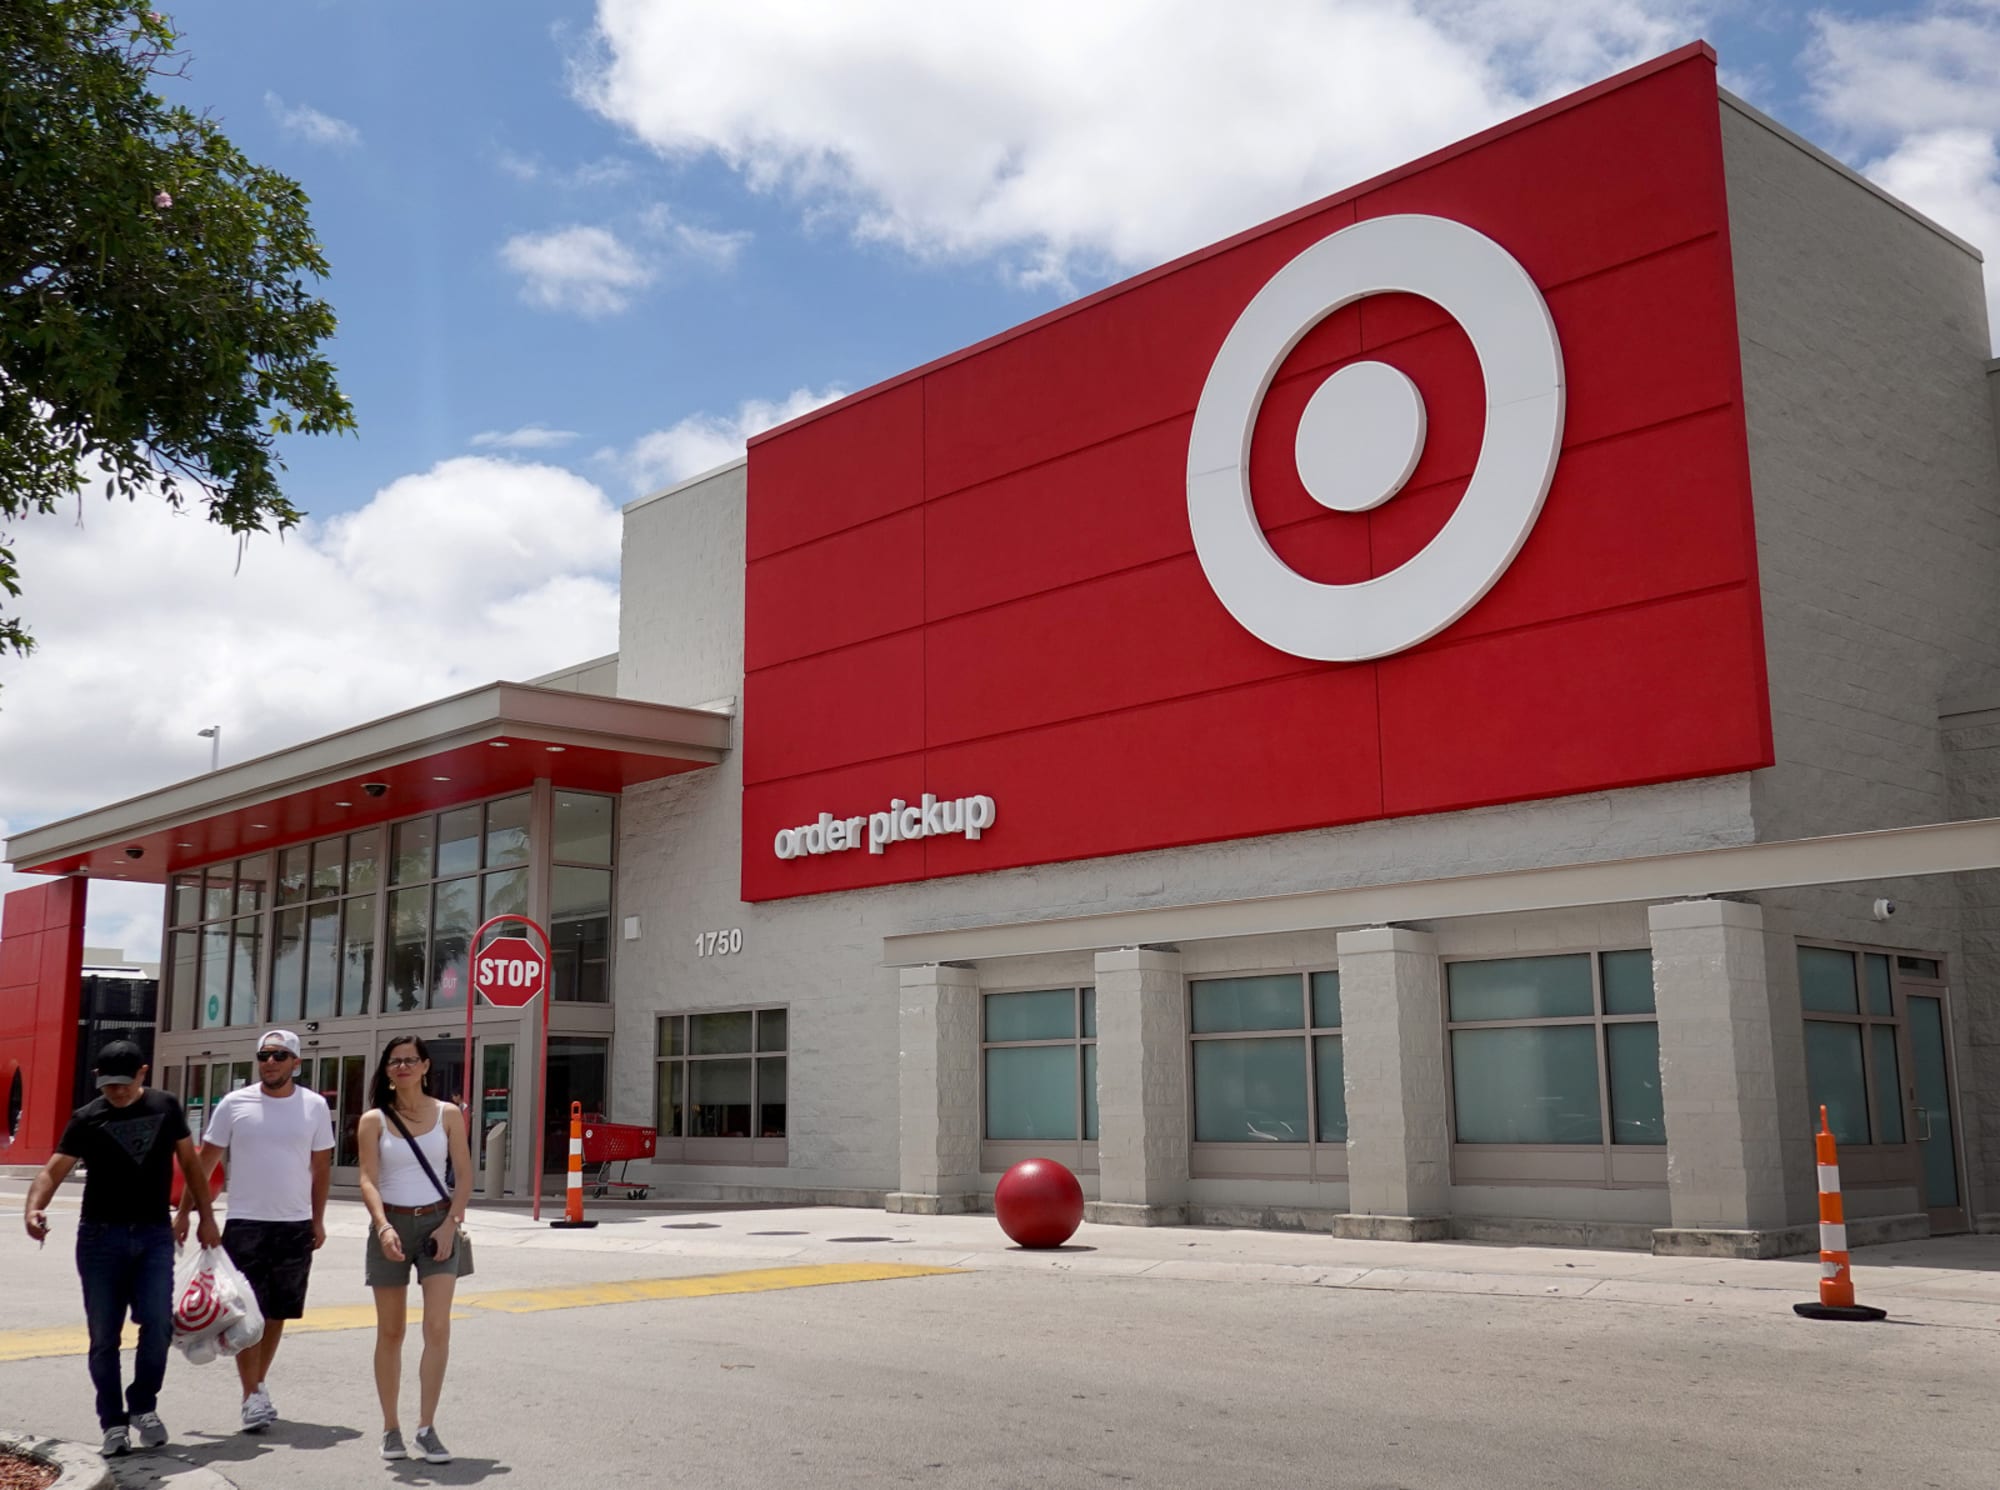 Target Day Deals 2022 offer big savings on favorite brands